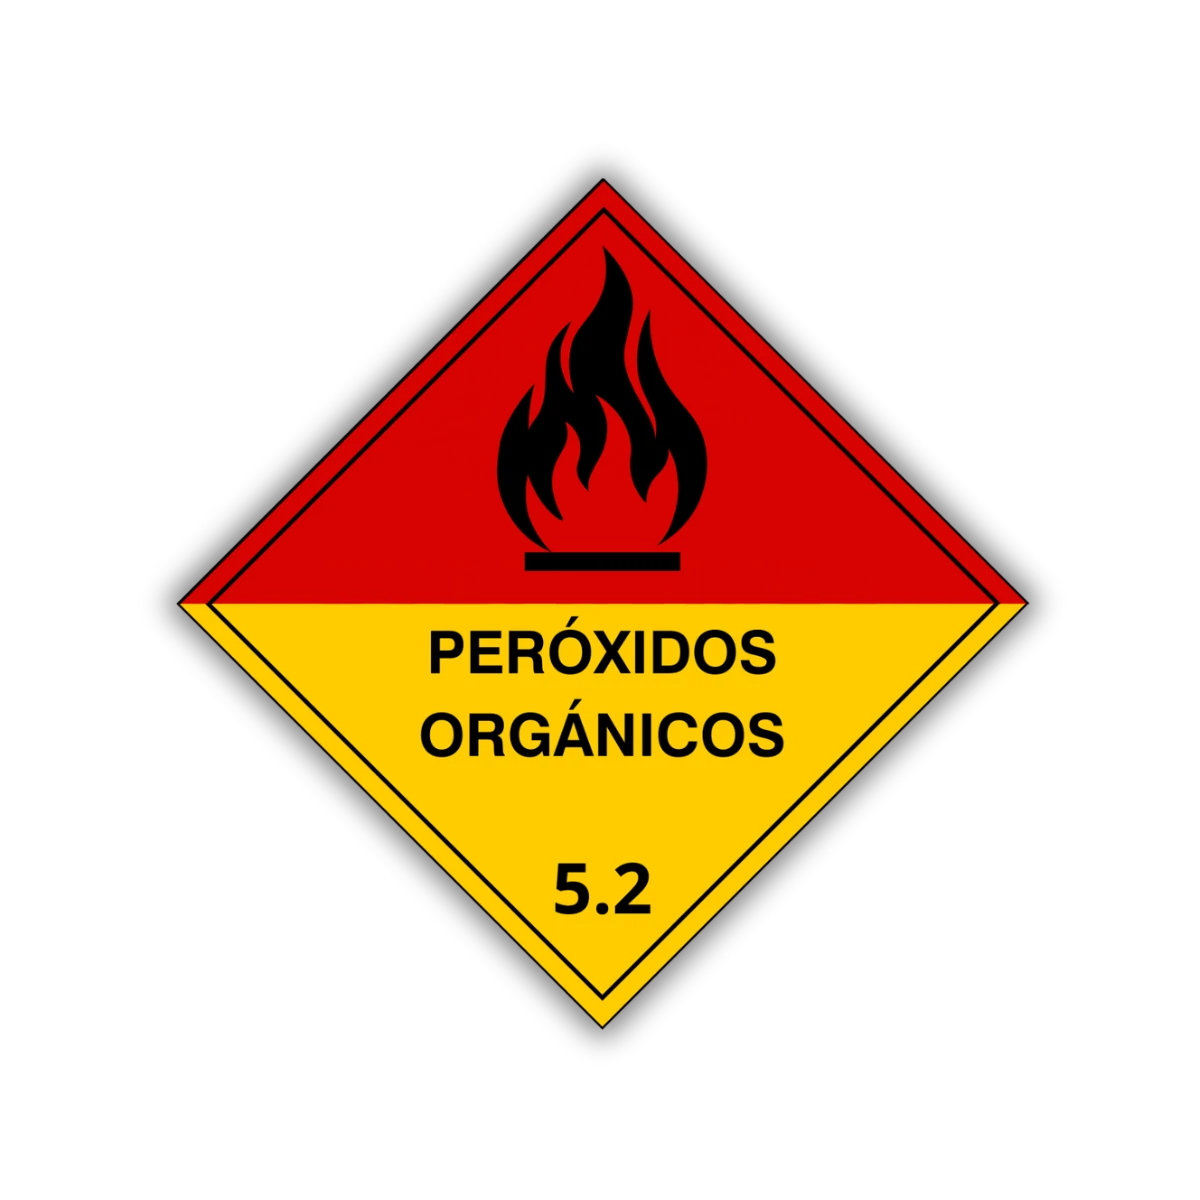 Le etiqueta peróxidos orgánicos ayuda a identificar el resguardo de materiales volátiles